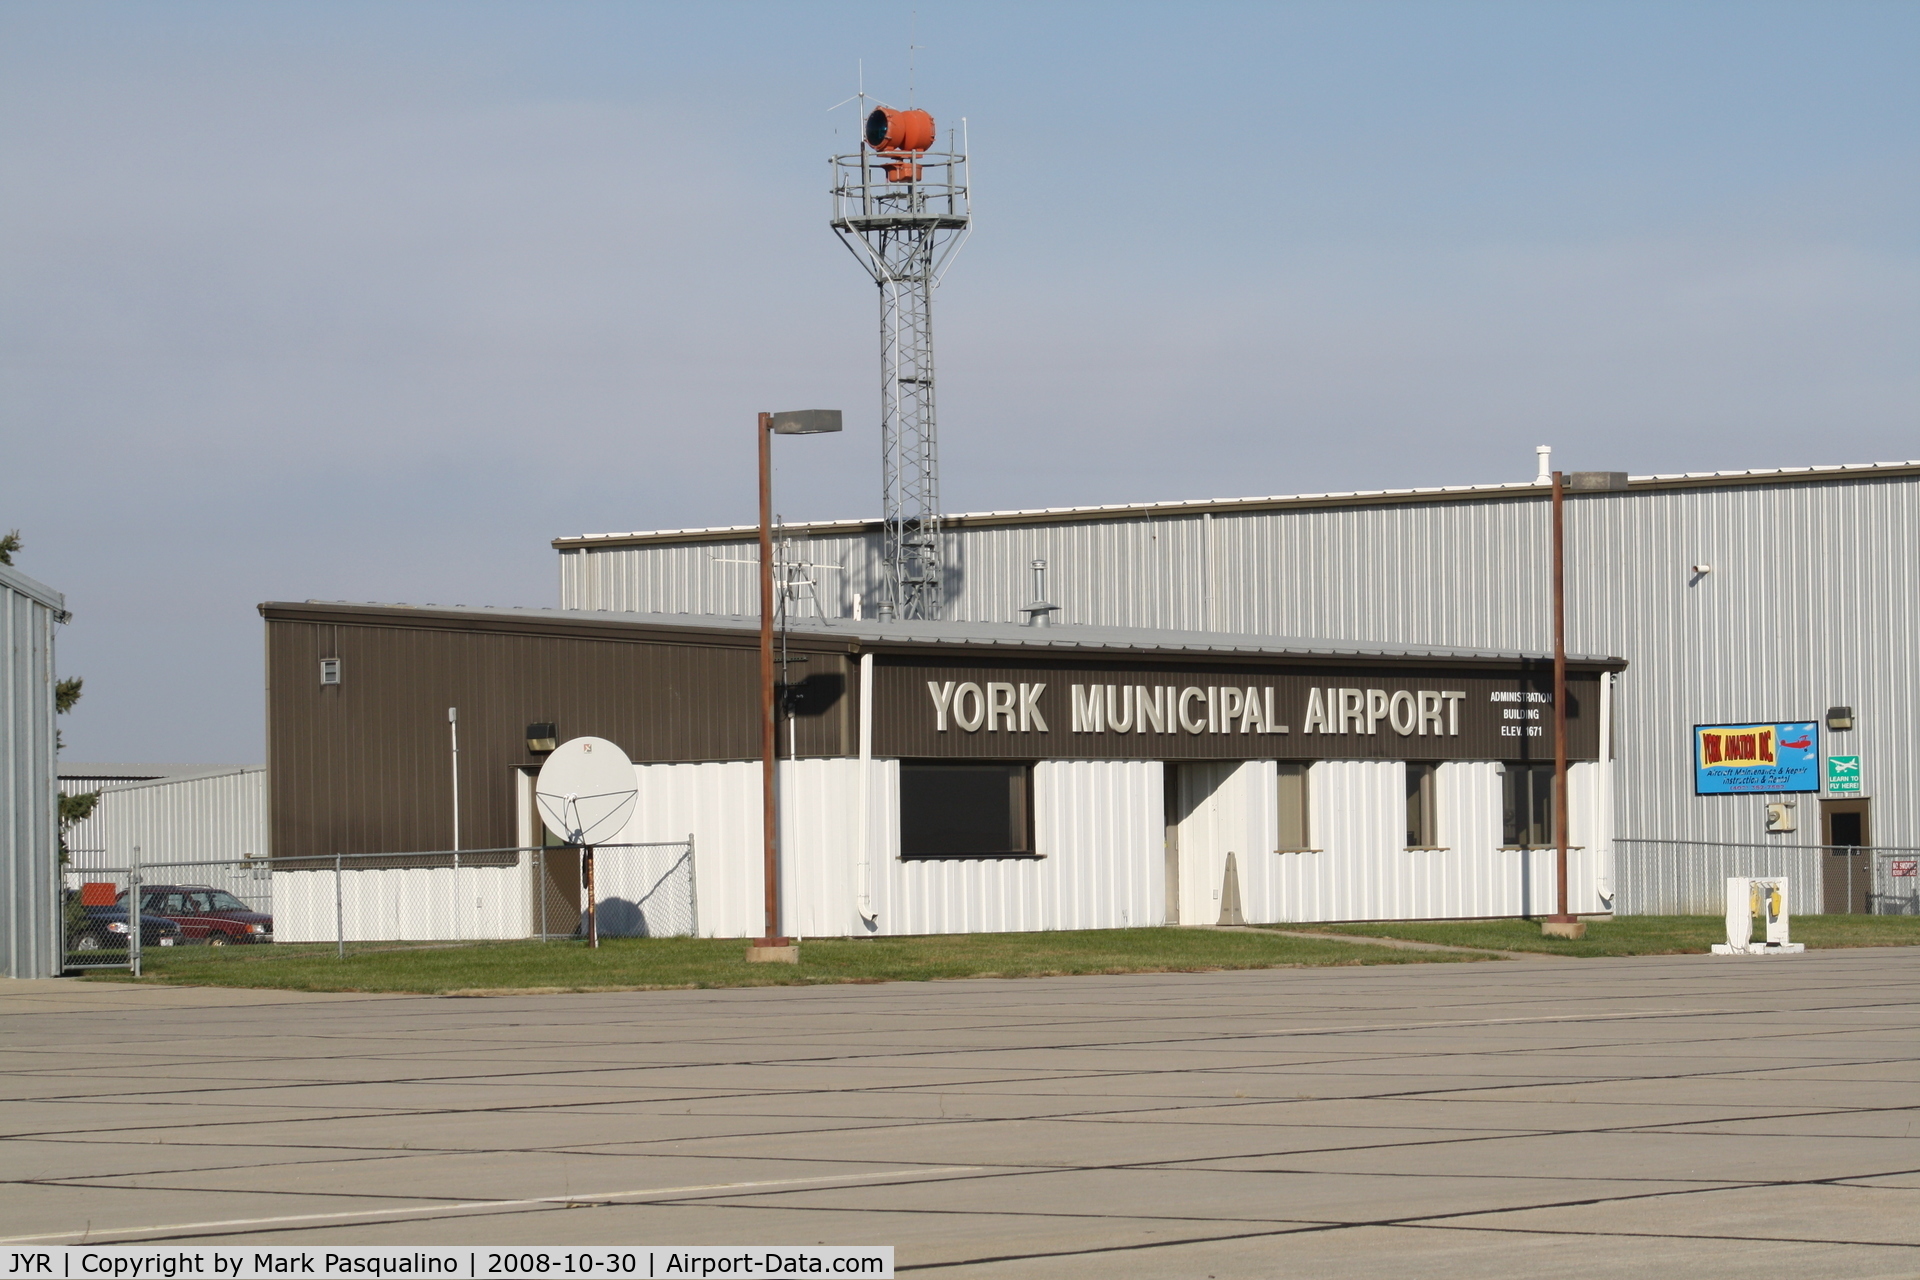 York Municipal Airport (JYR) - Executive Terminal